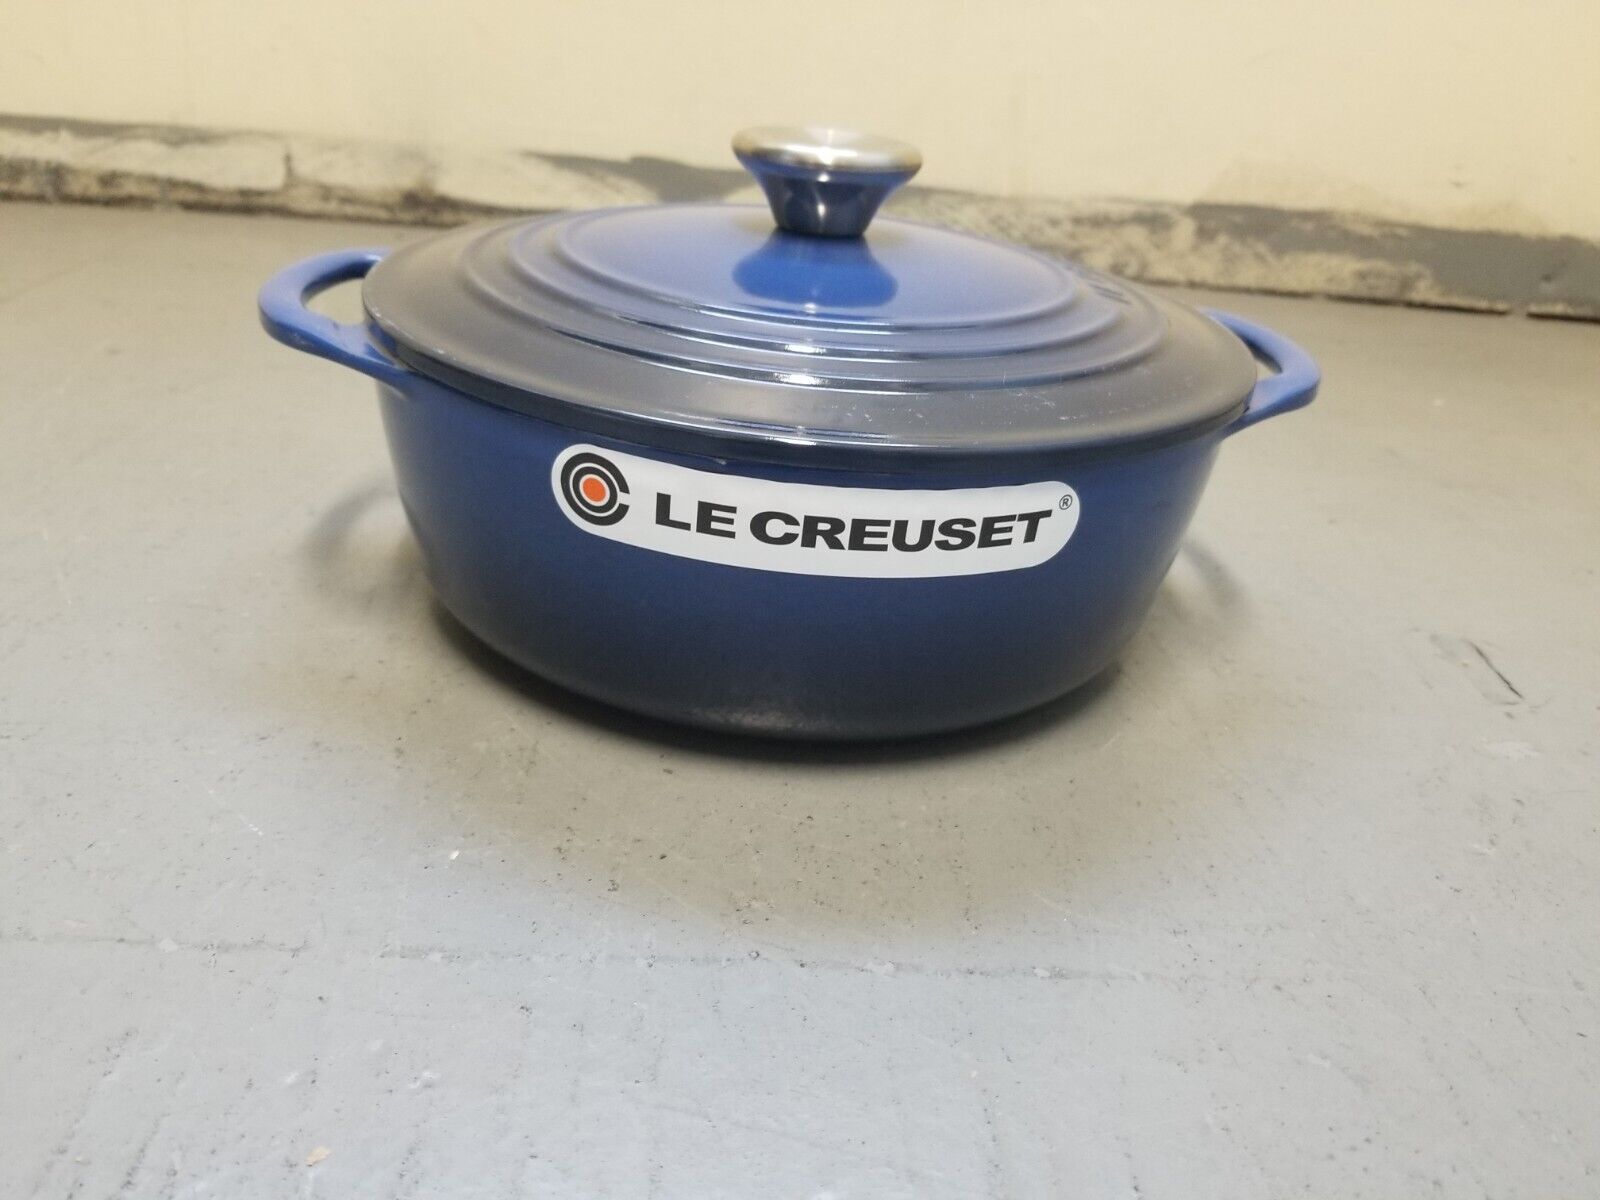 Le Creuset Cast Iron Enamel Dutch Oven 3-1/2 Quart color -  (Blue) New 